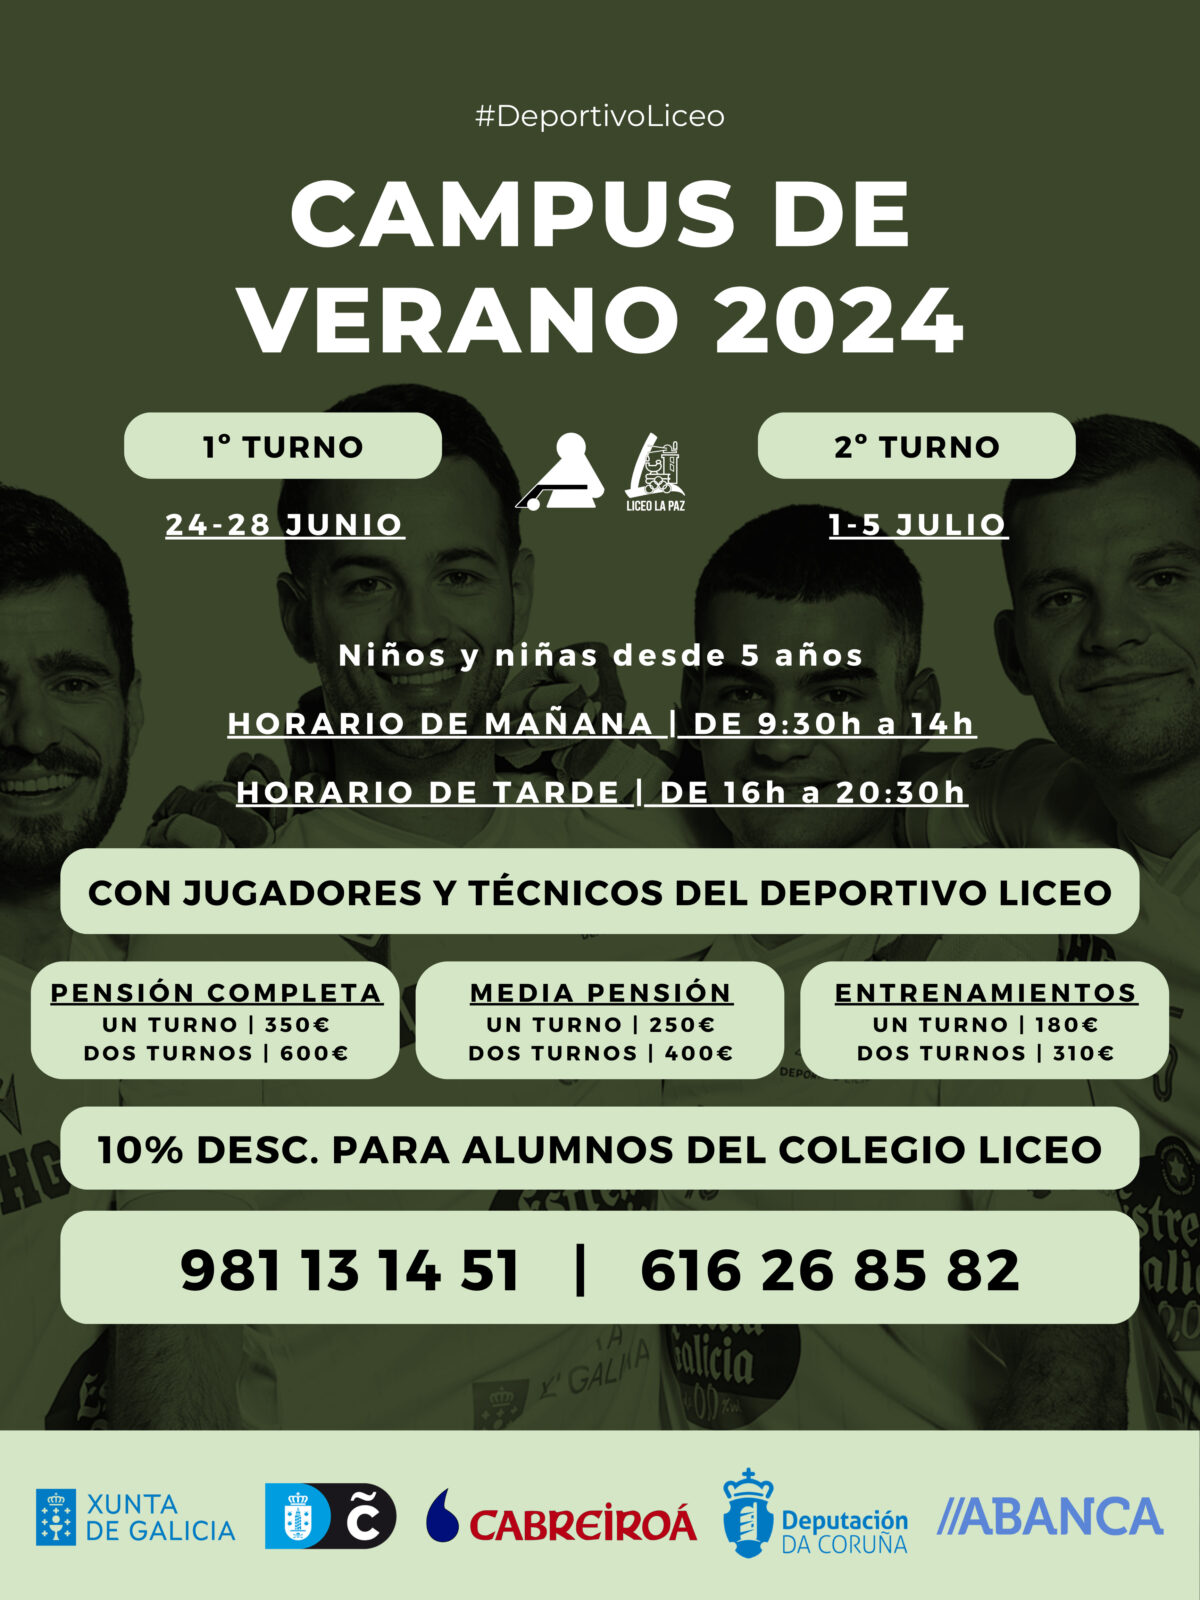 Campus de Verano 2024 | ¡Inscripciones abiertas!